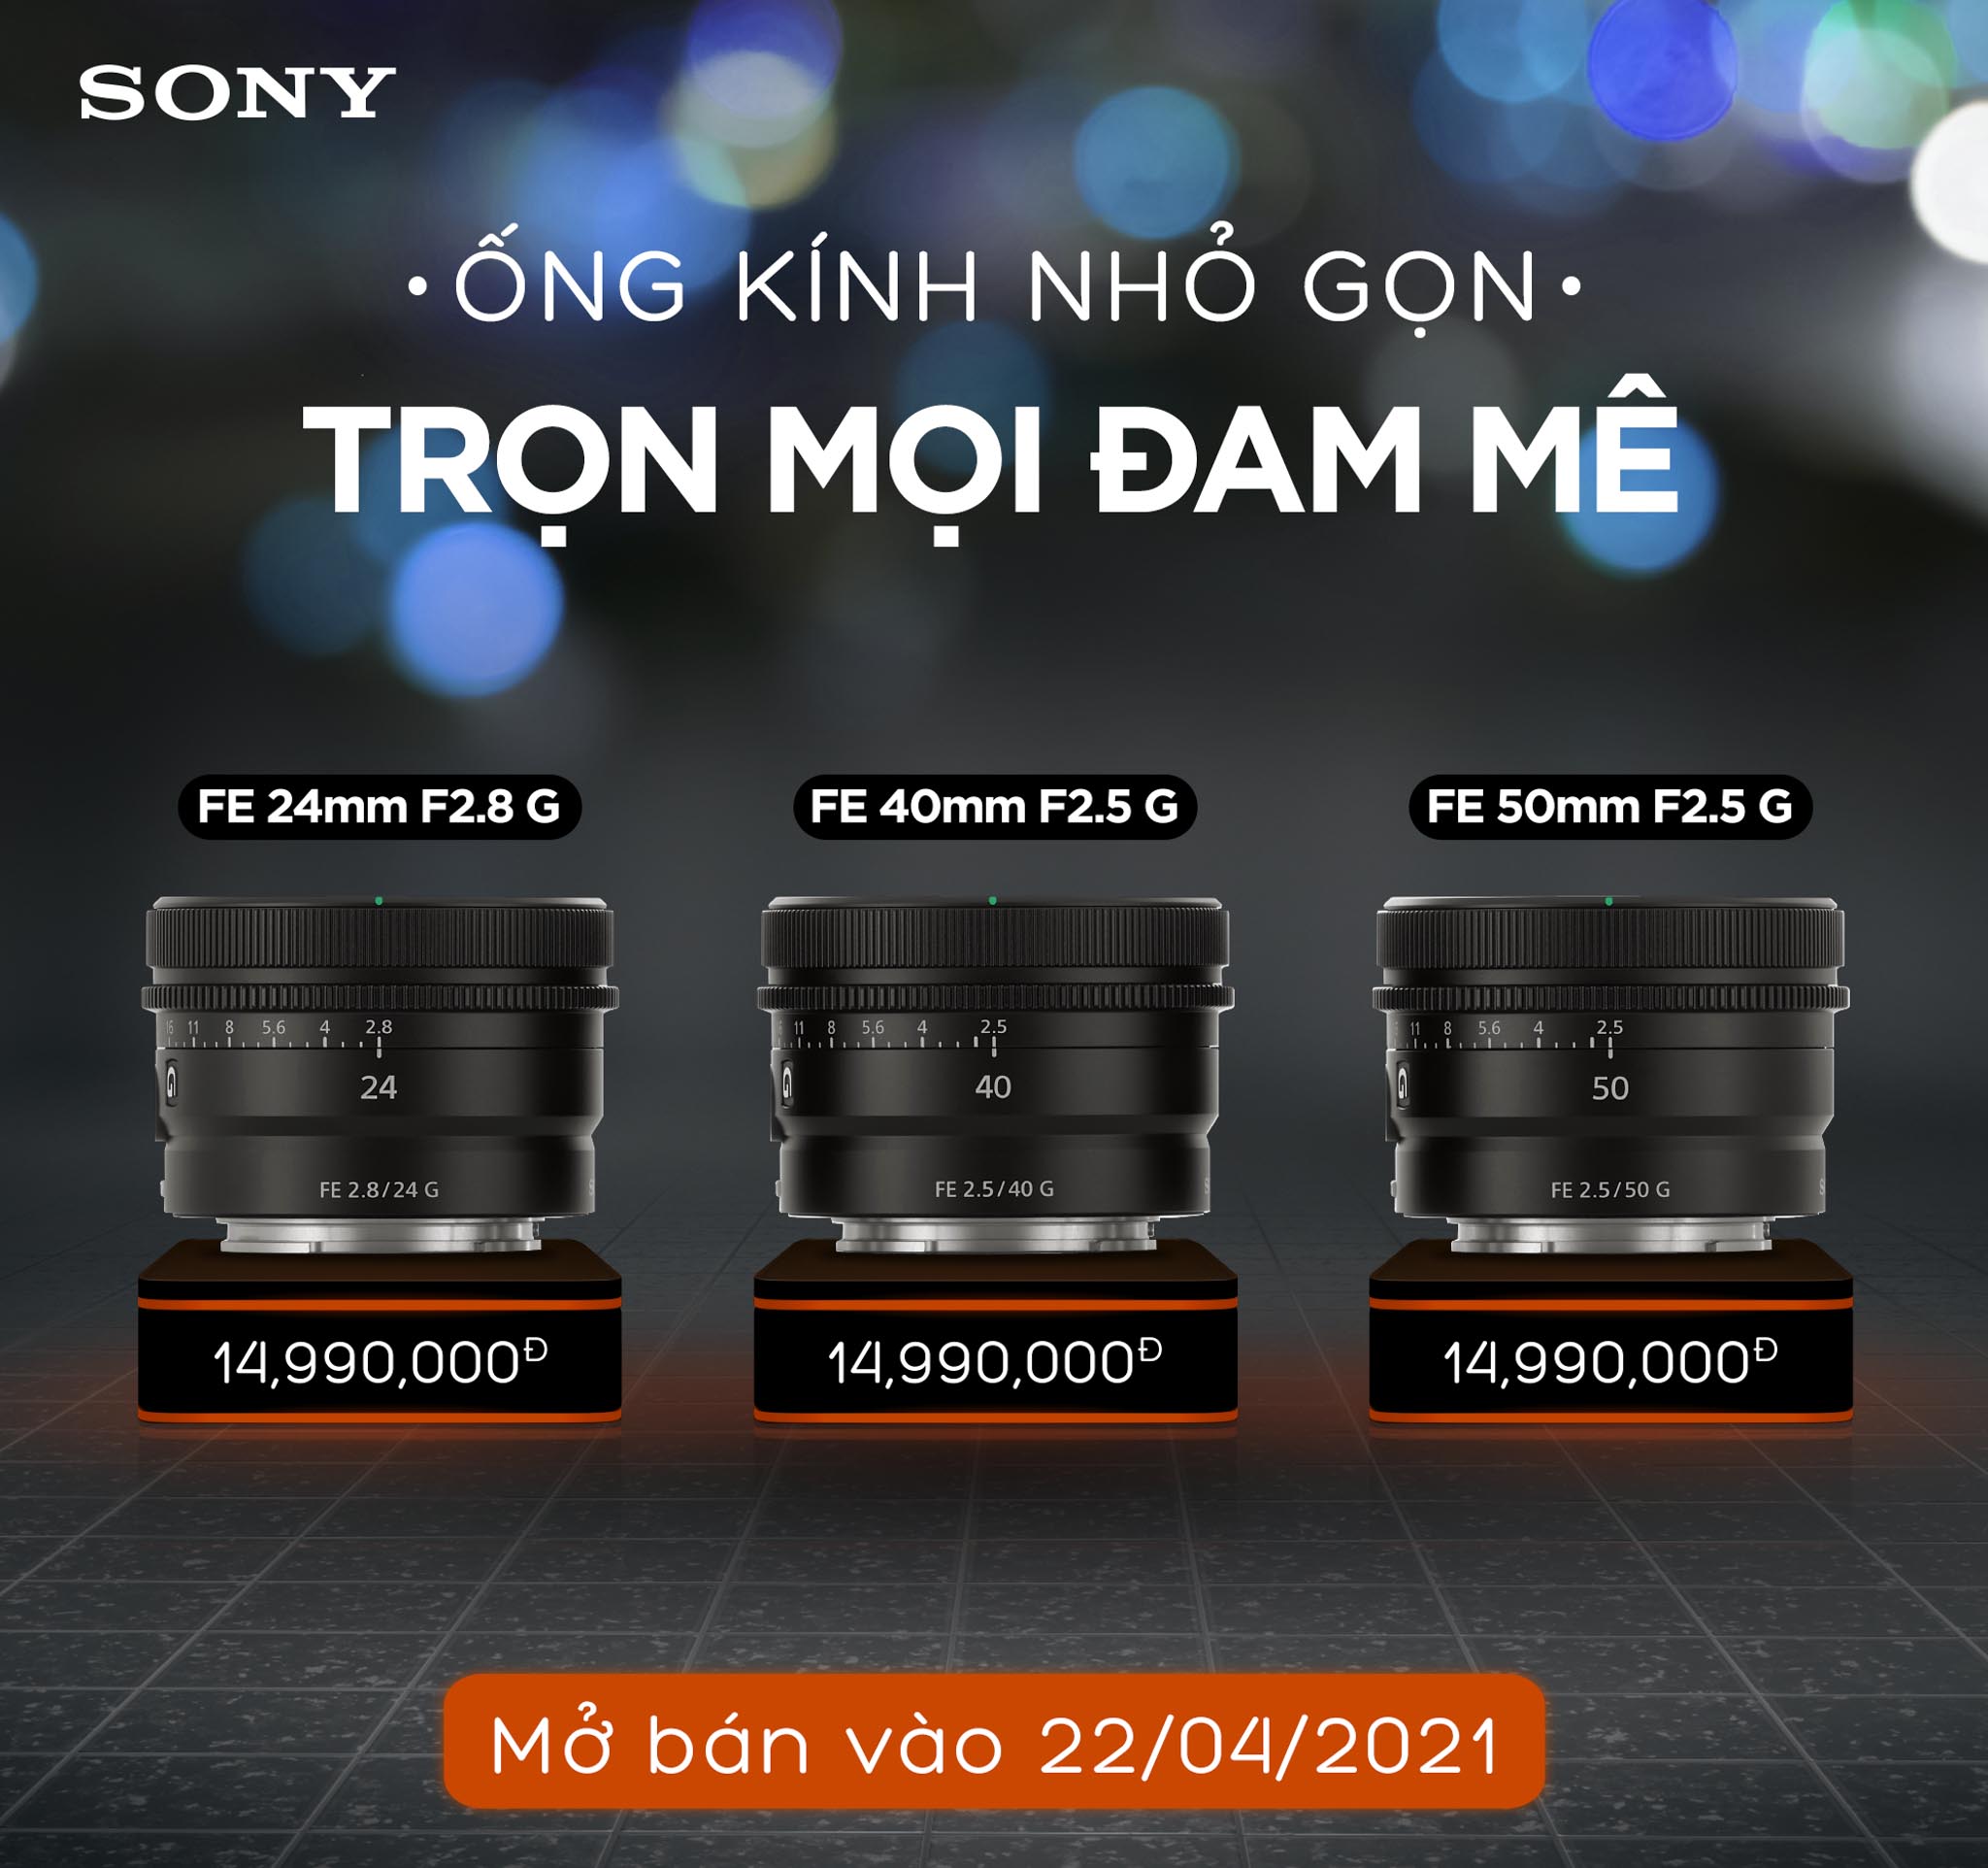 Sony Electronics Việt Nam ra mắt ống kính FE 50mm F1.2 G Master cùng ba ống kính dòng G cho dòng máy E-Mount Full-frame